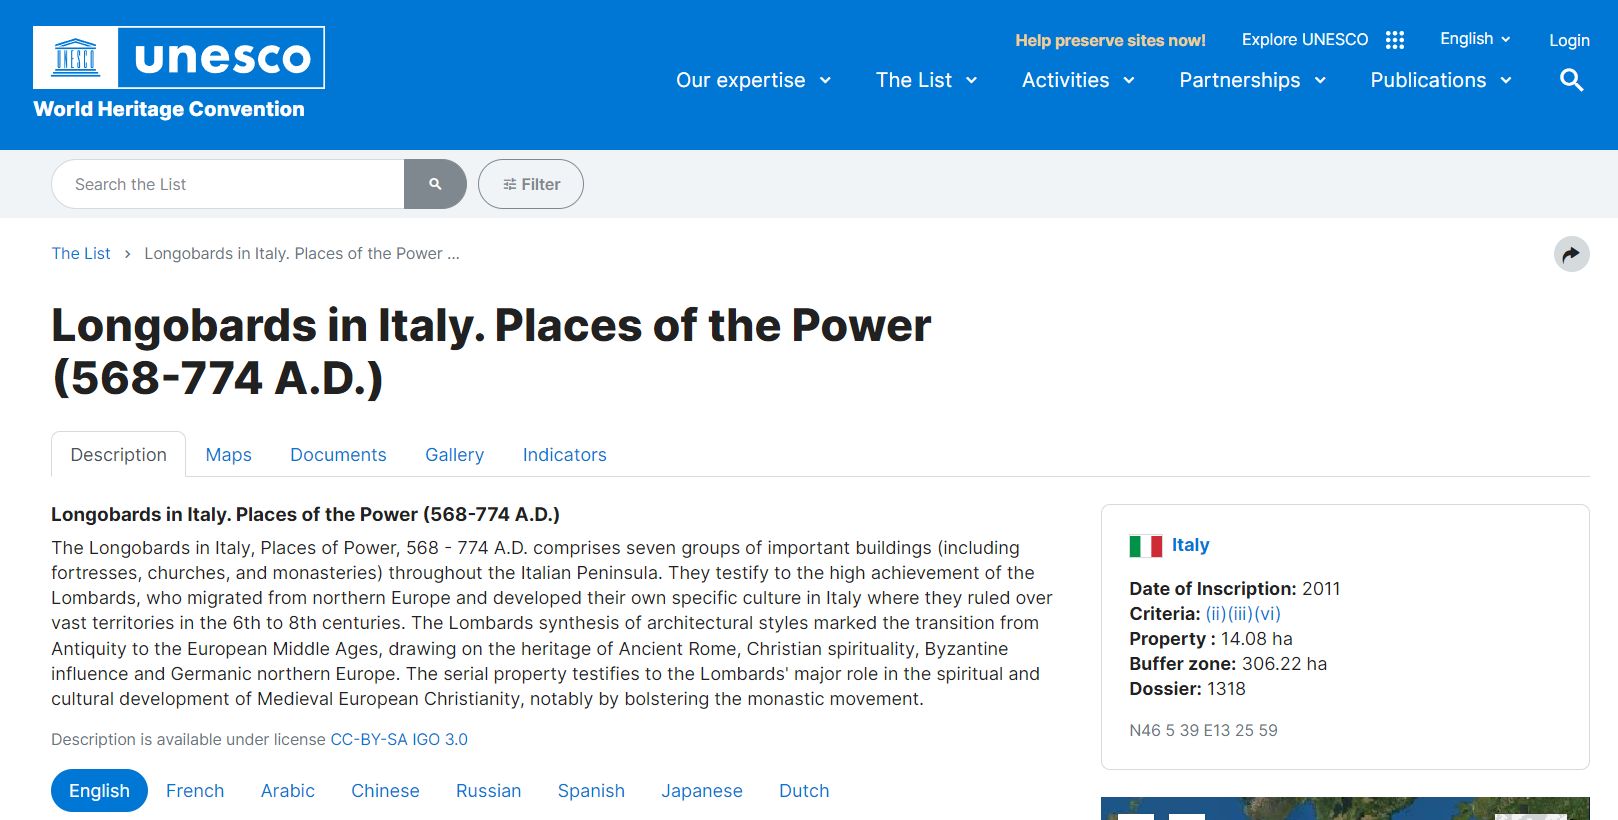 UNESCO Longobards in Italy: tra le lingue utilizzate non c'è l'ITALIANO